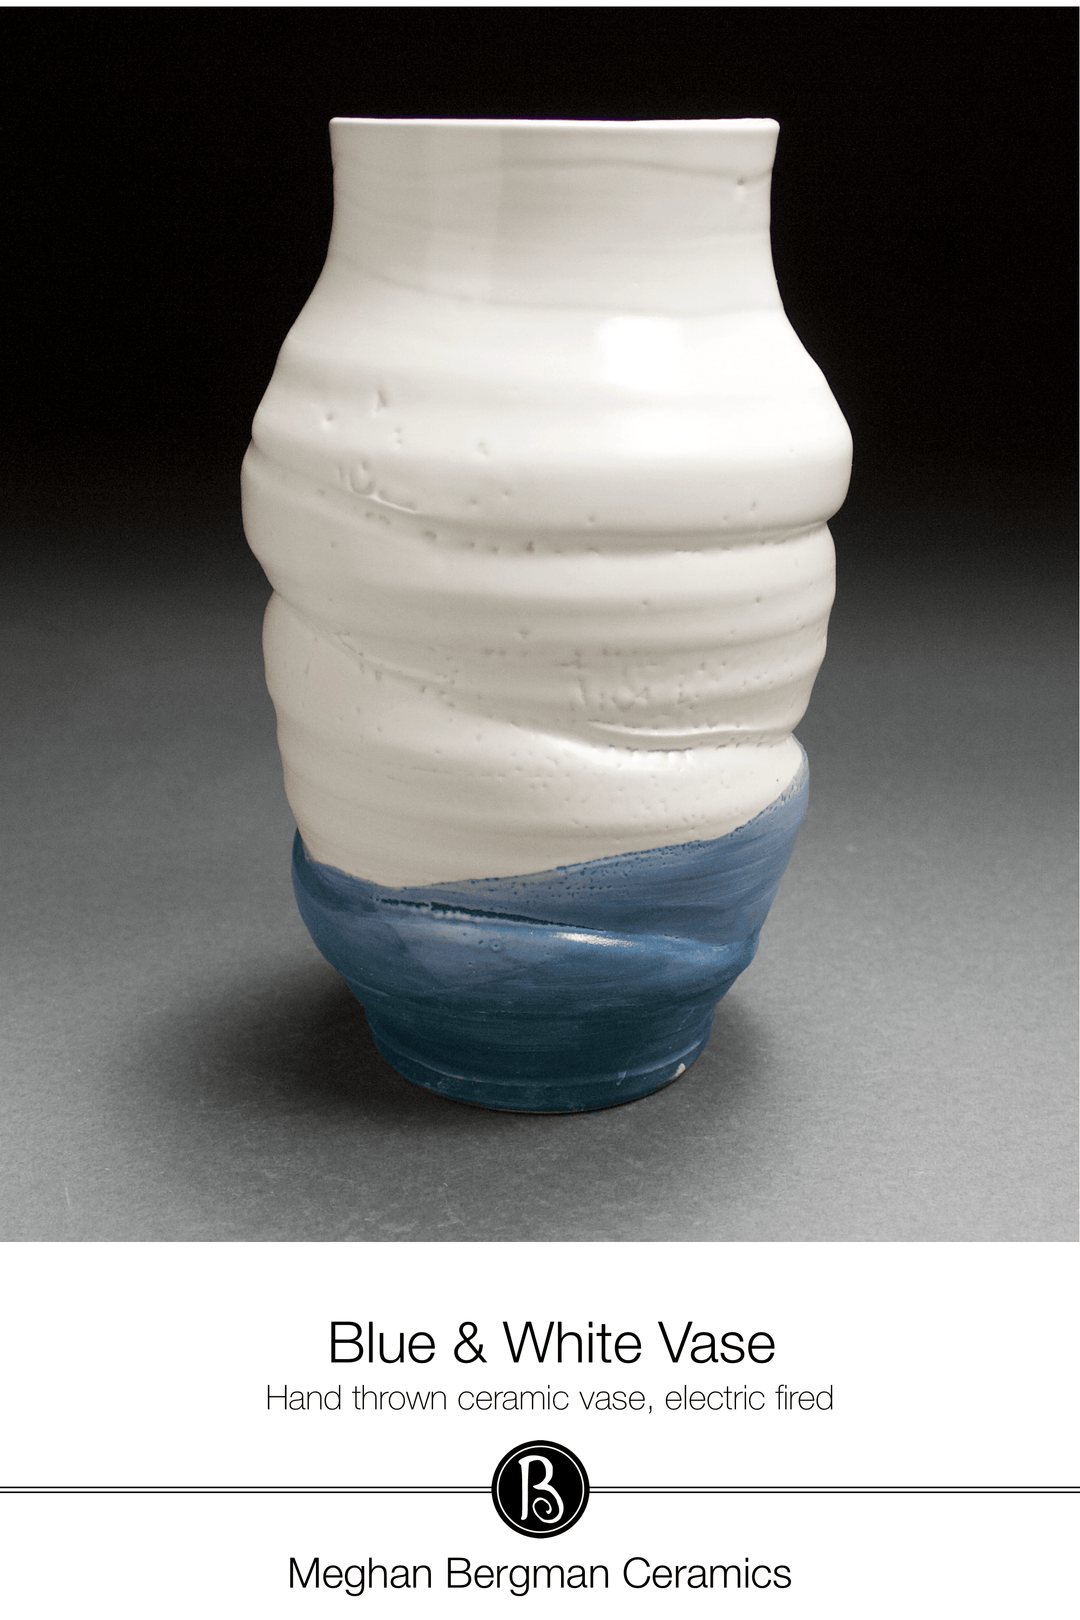 Ceramic Vase | White & Blue Vase - Meghan Bergman Ceramics - Handmade Pottery & Ceramic Fine Art in Kennett Square, PA